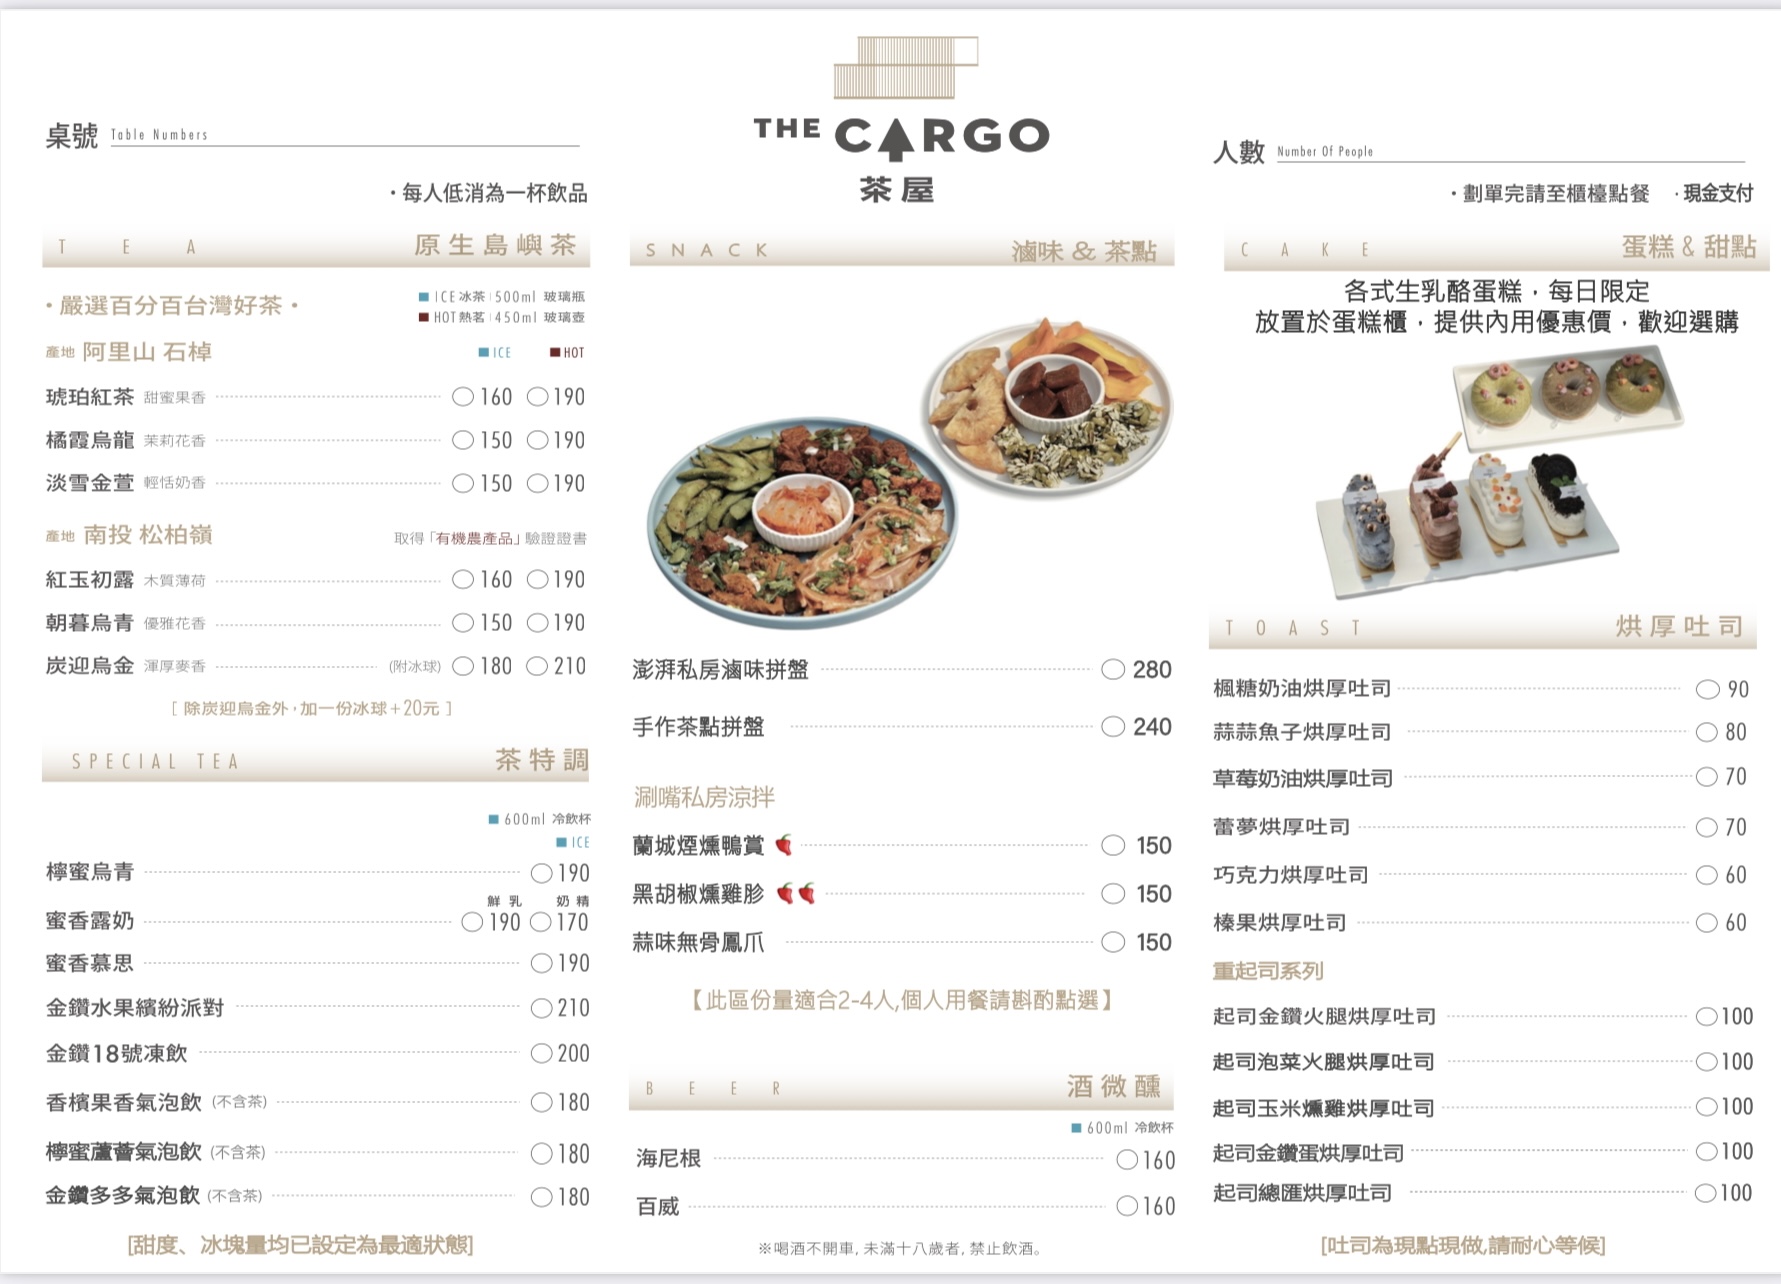 THE CARGO茶屋菜單MENU